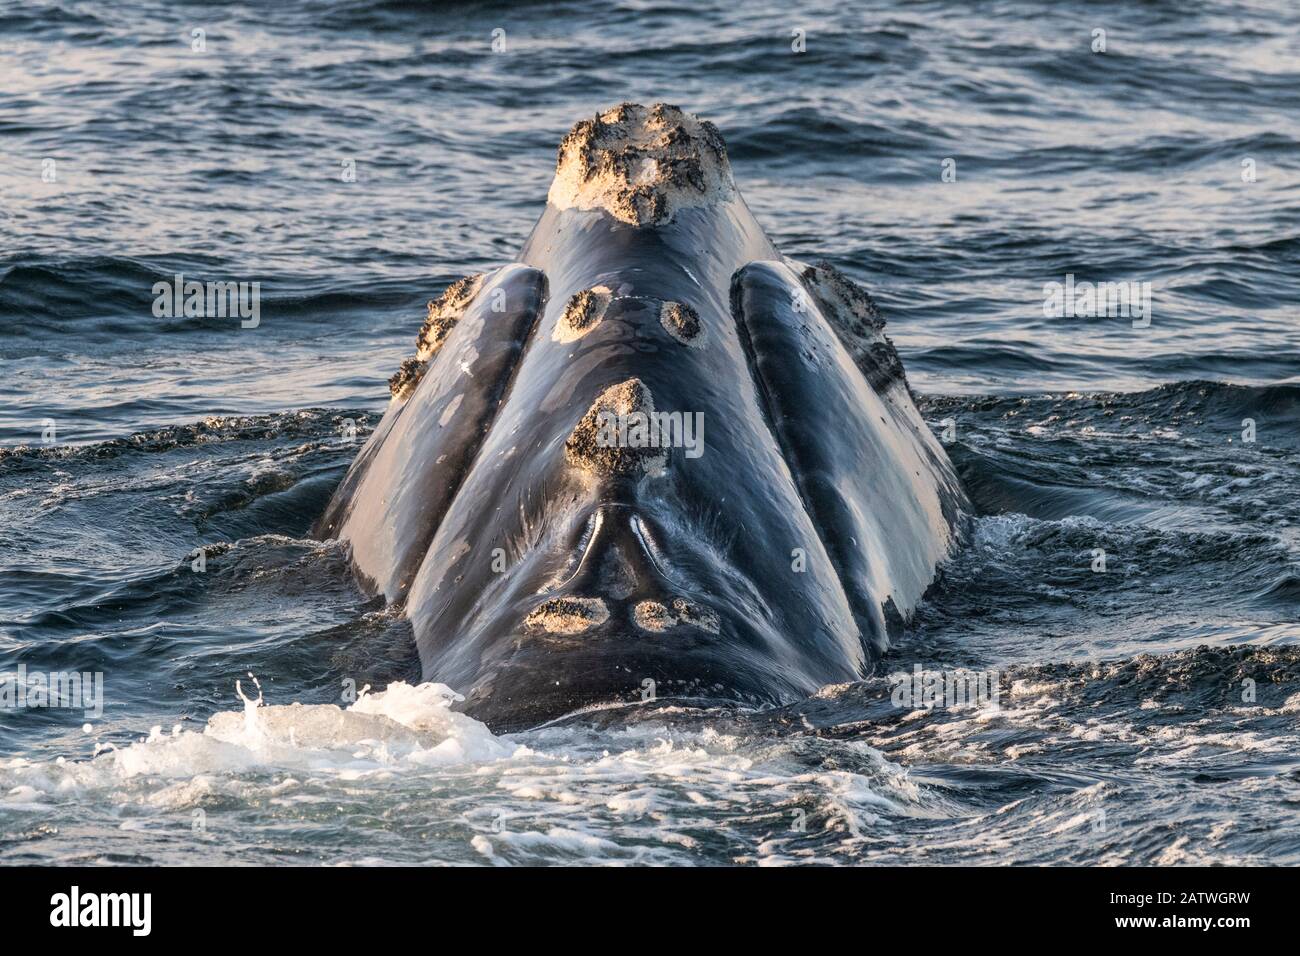 Kopf eines rechten Nordatlantikwals (Eubalaena glacialis), der Kallositäten zeigt, Flecken aufgerauter Haut, die für jeden Wal einzigartig sind. Sankt-Lorenz-Golf, Kanada. Status der Weltnaturschutz-Weltnaturschutzunion: August Stockfoto